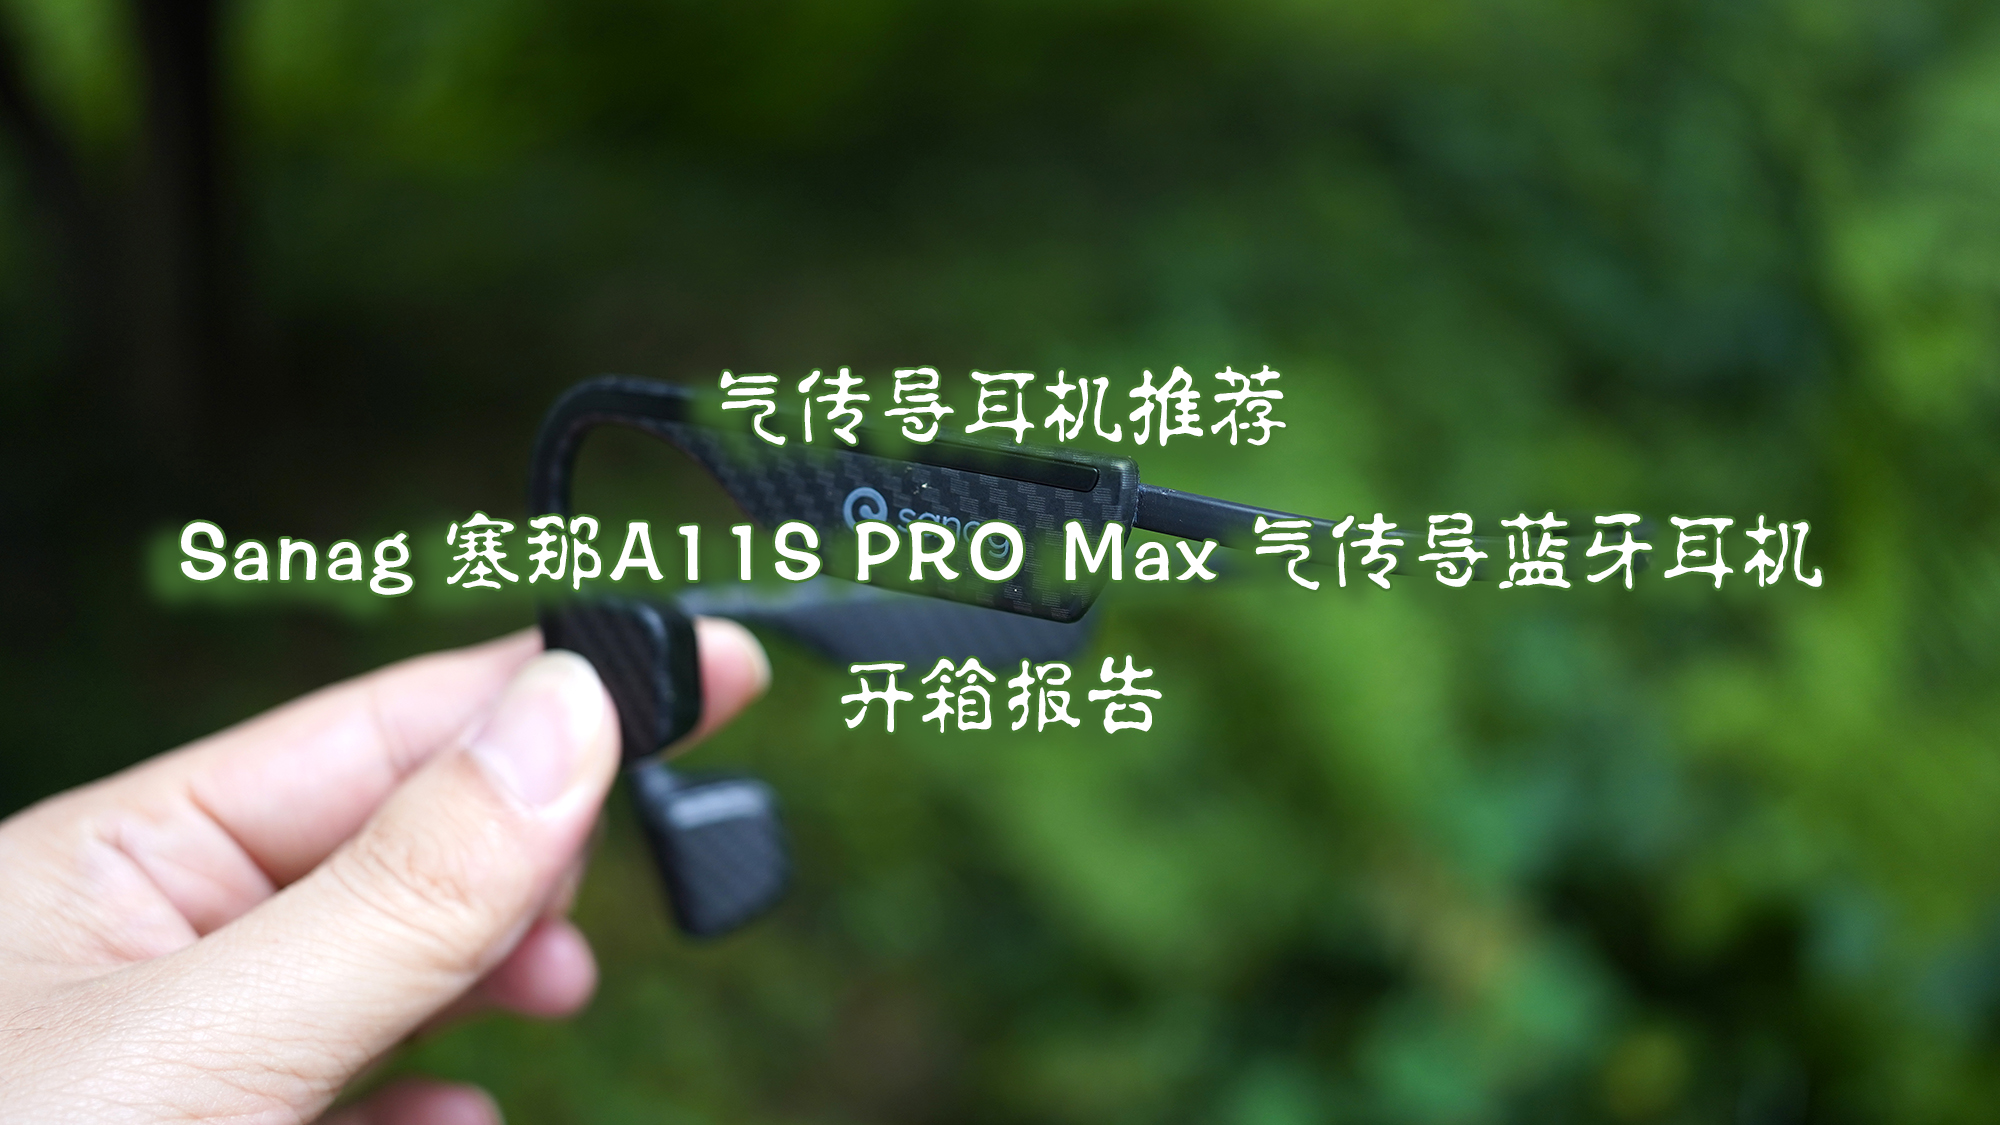 气传导耳机推荐 Sanag 塞那A11S PRO Max 气传导蓝牙耳机开箱报告